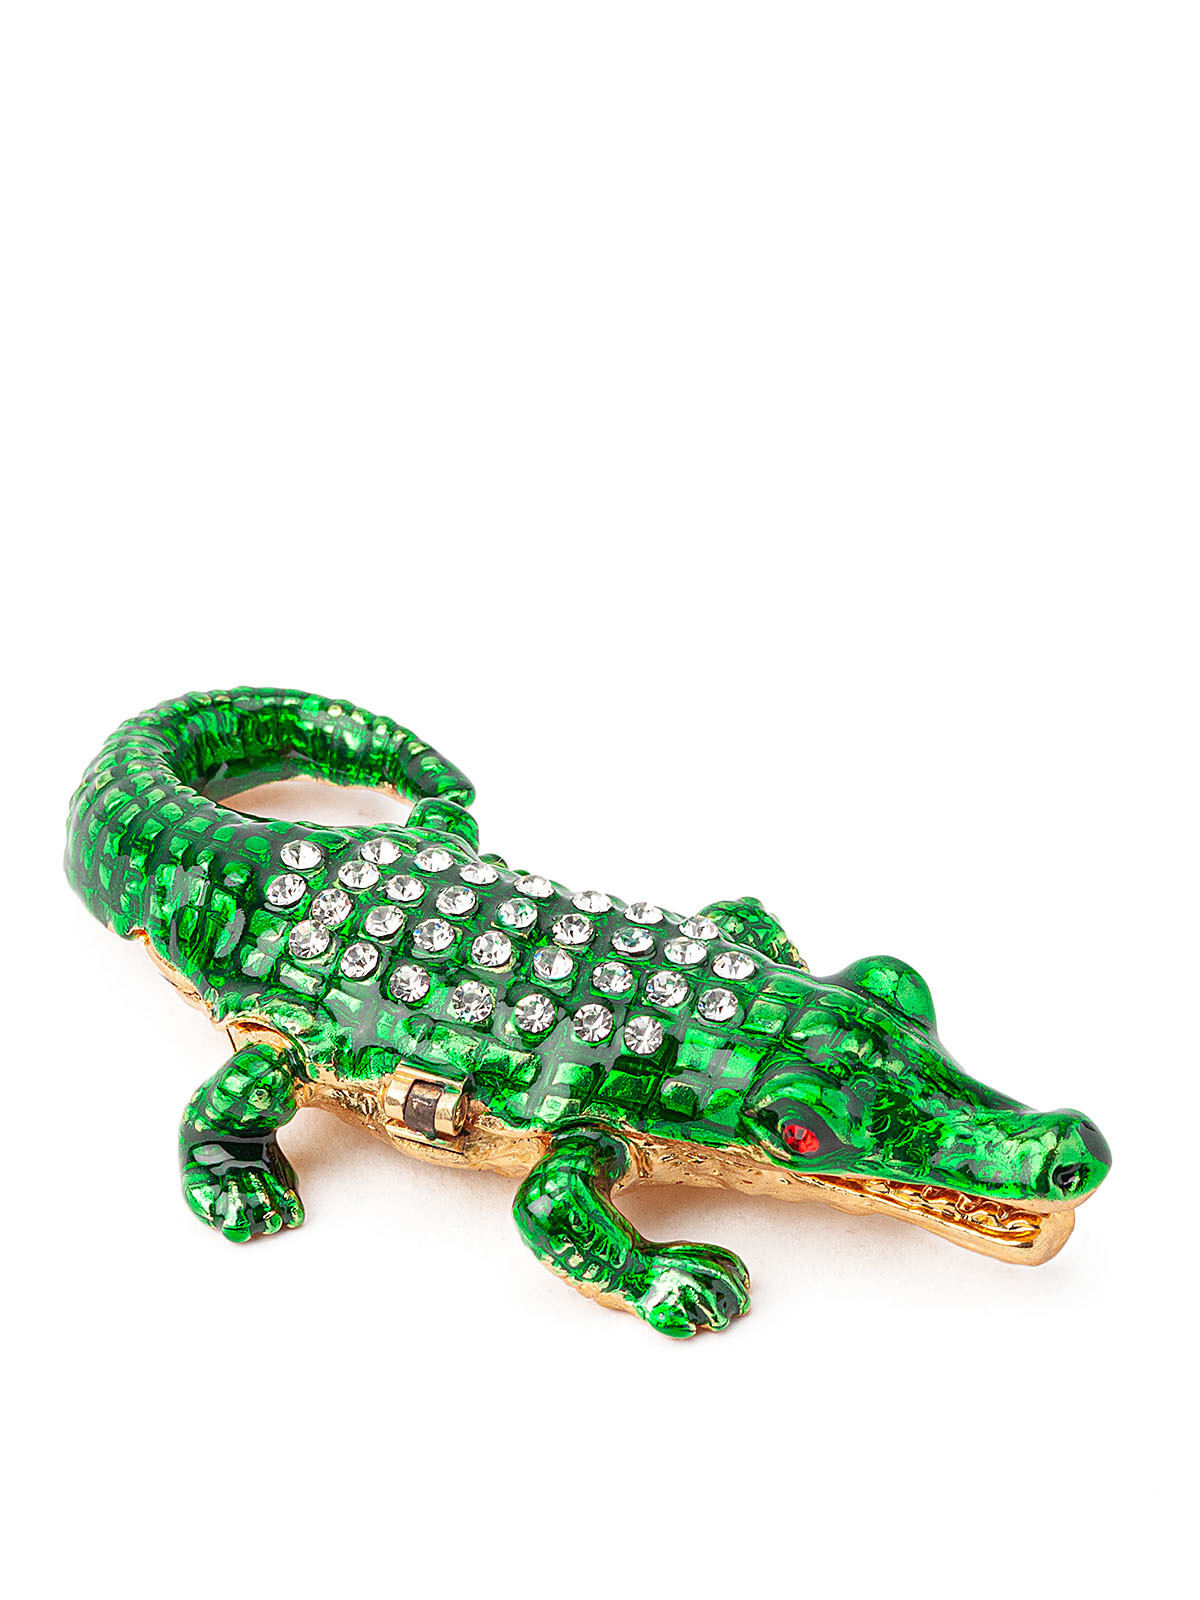 Гуджитсу крокодил зеленый